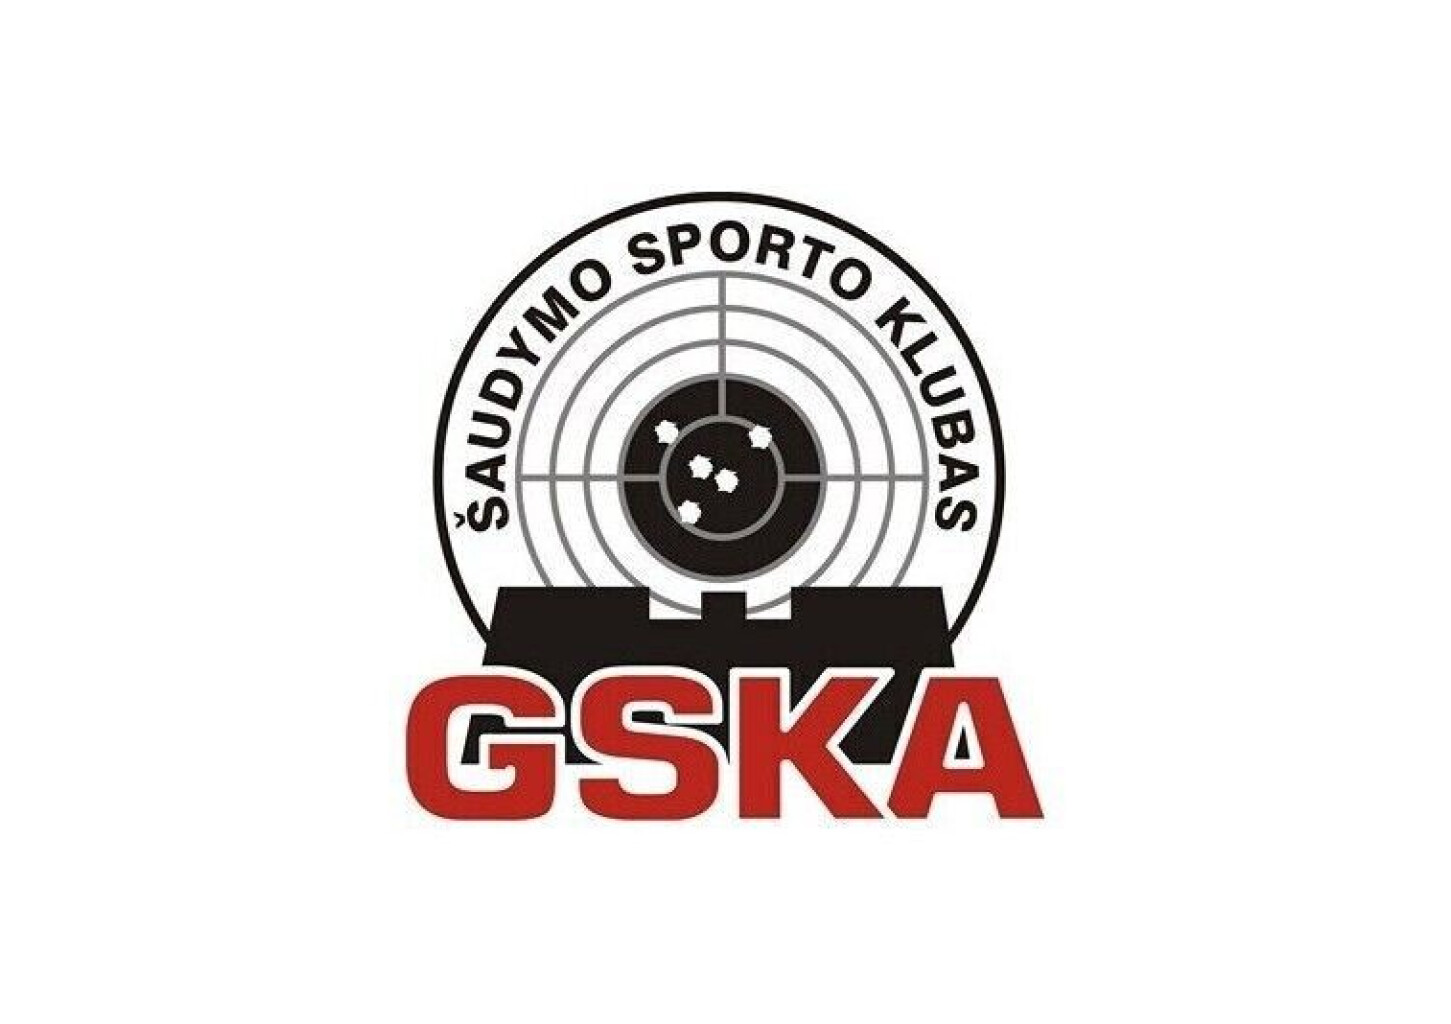 Šaudymo sporto klubo GSKA dovanų čekis